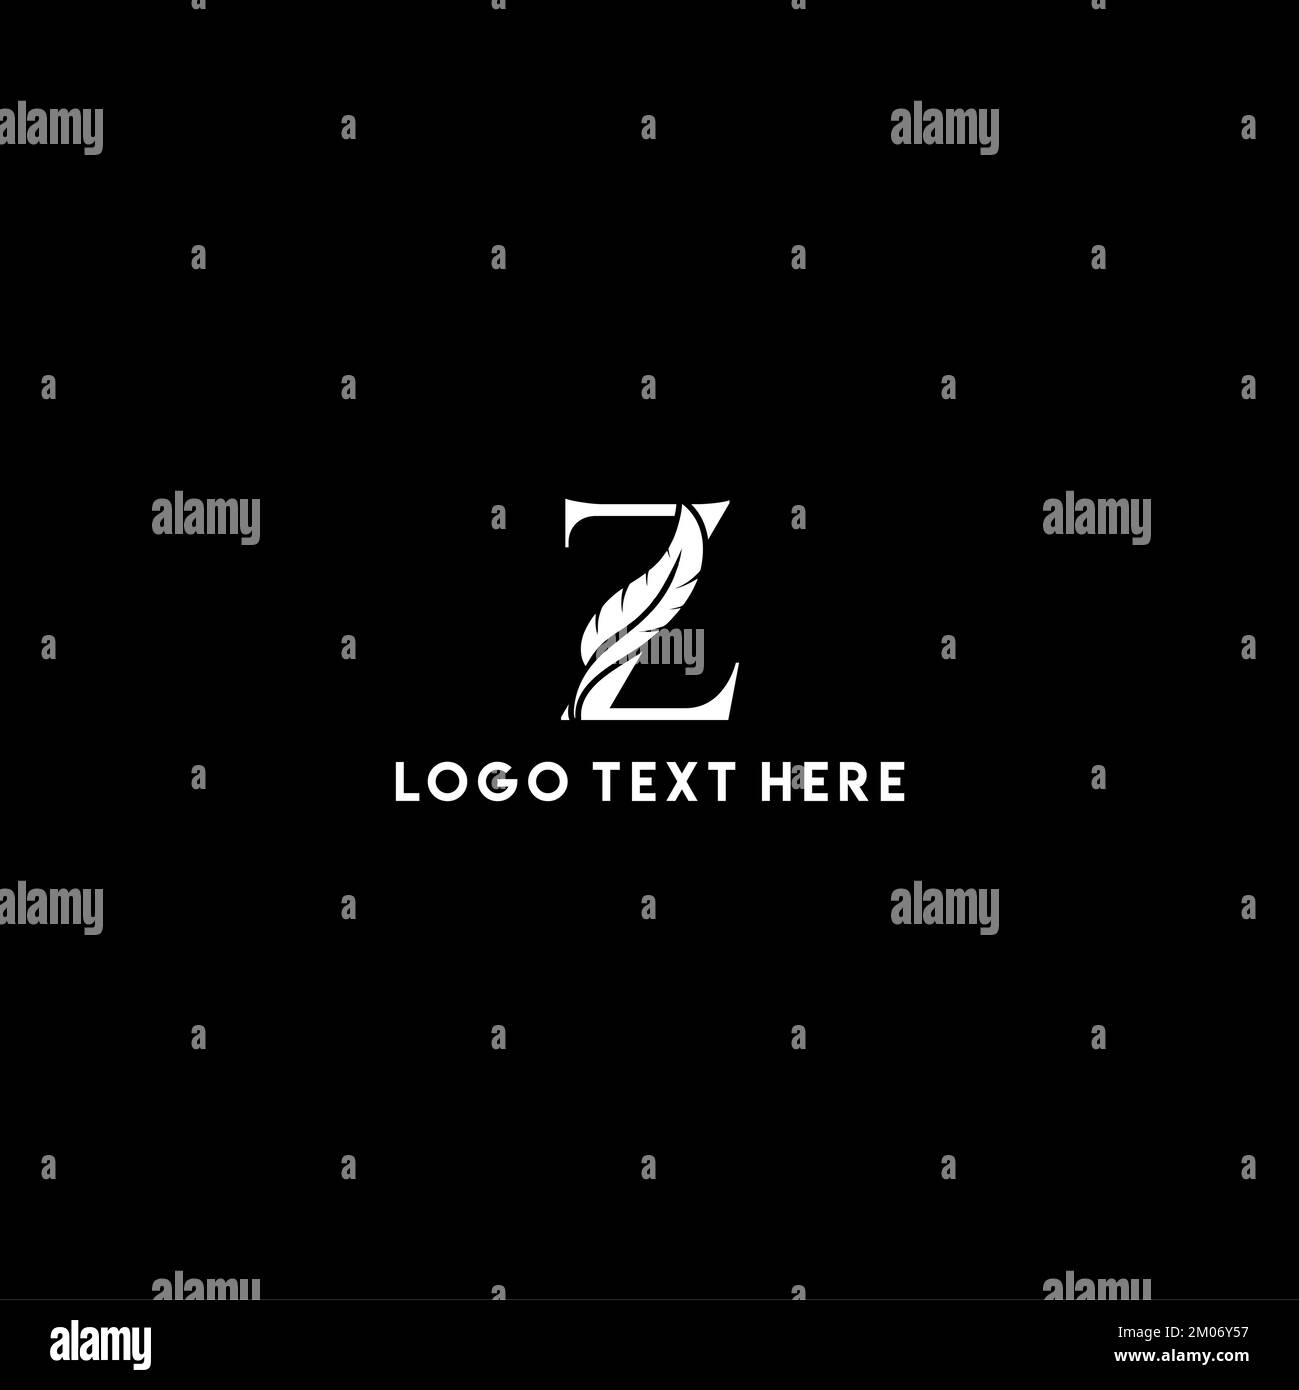 Lettera iniziale logo Z con nome dell'azienda Feather, logo Feather con lettera iniziale, logo Notary, logo Quill Illustrazione Vettoriale